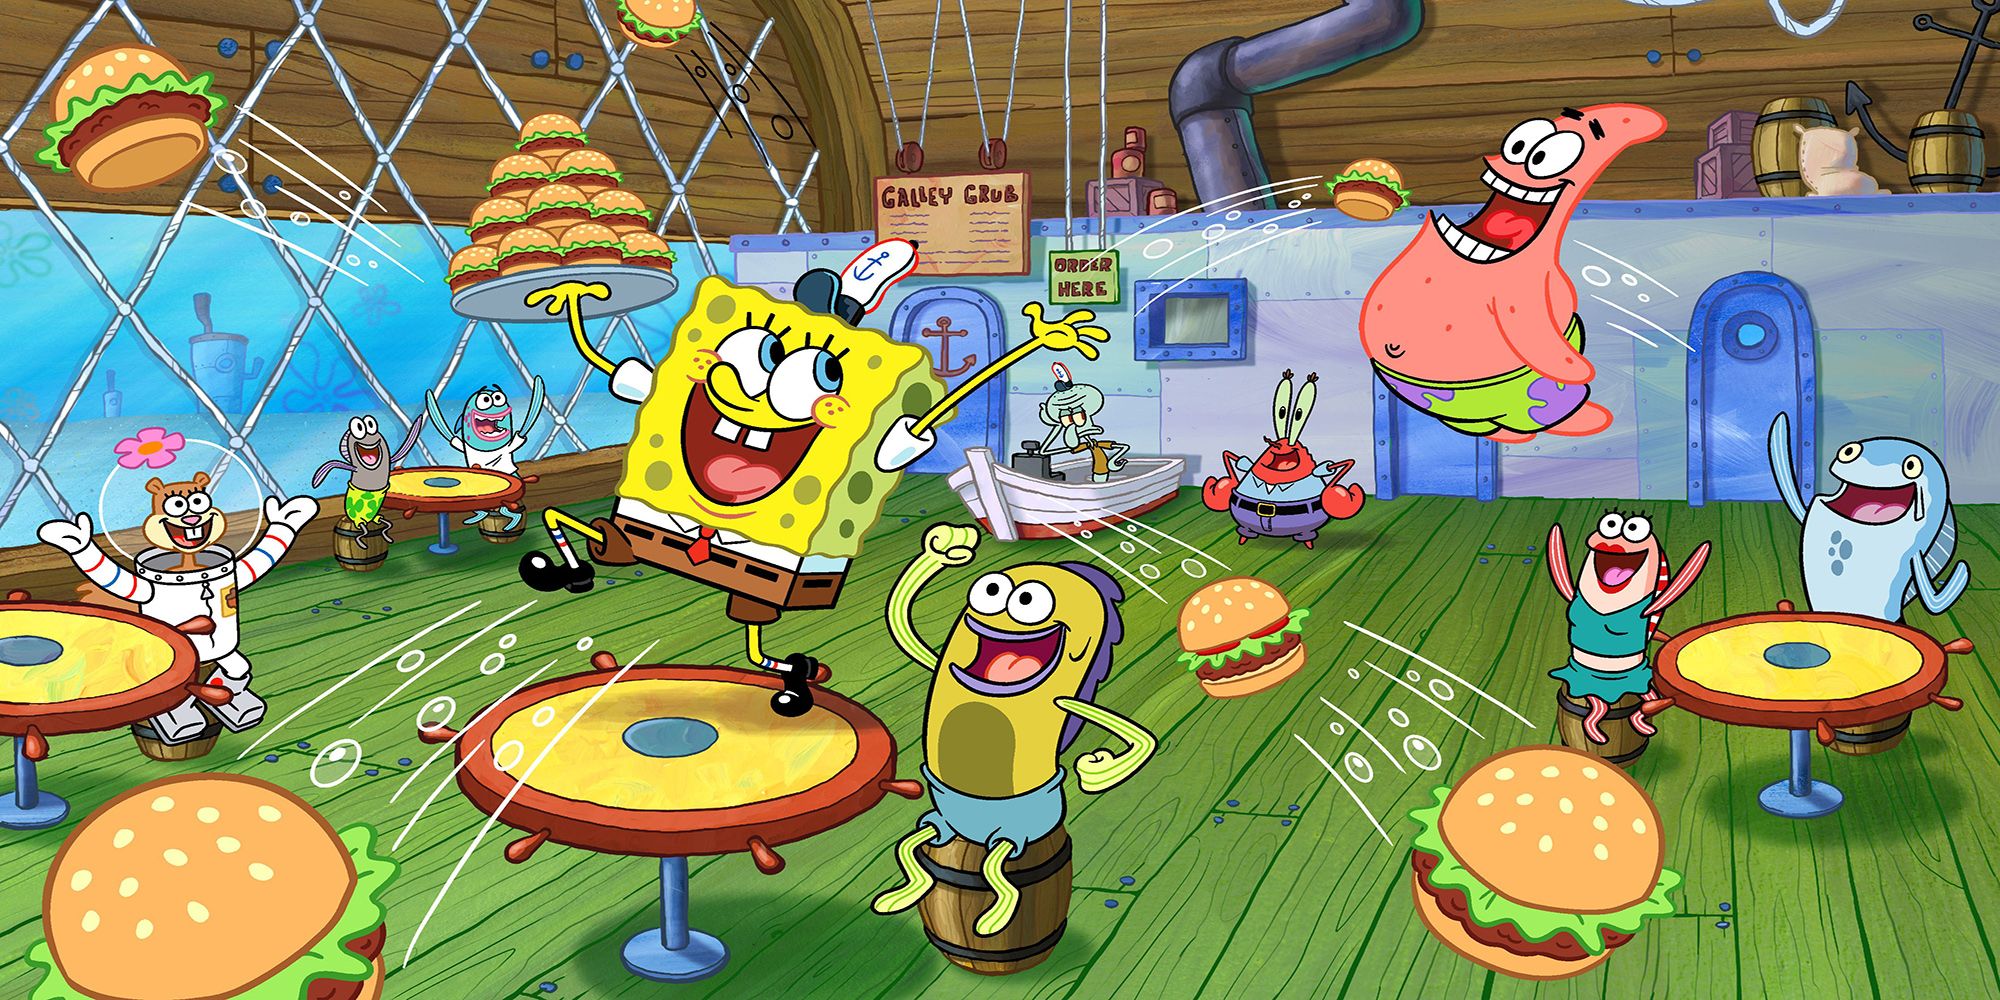 Spongebob gleefully serves krabby patties to his friends at the Krusty Krab in Spongebob Squarepants.